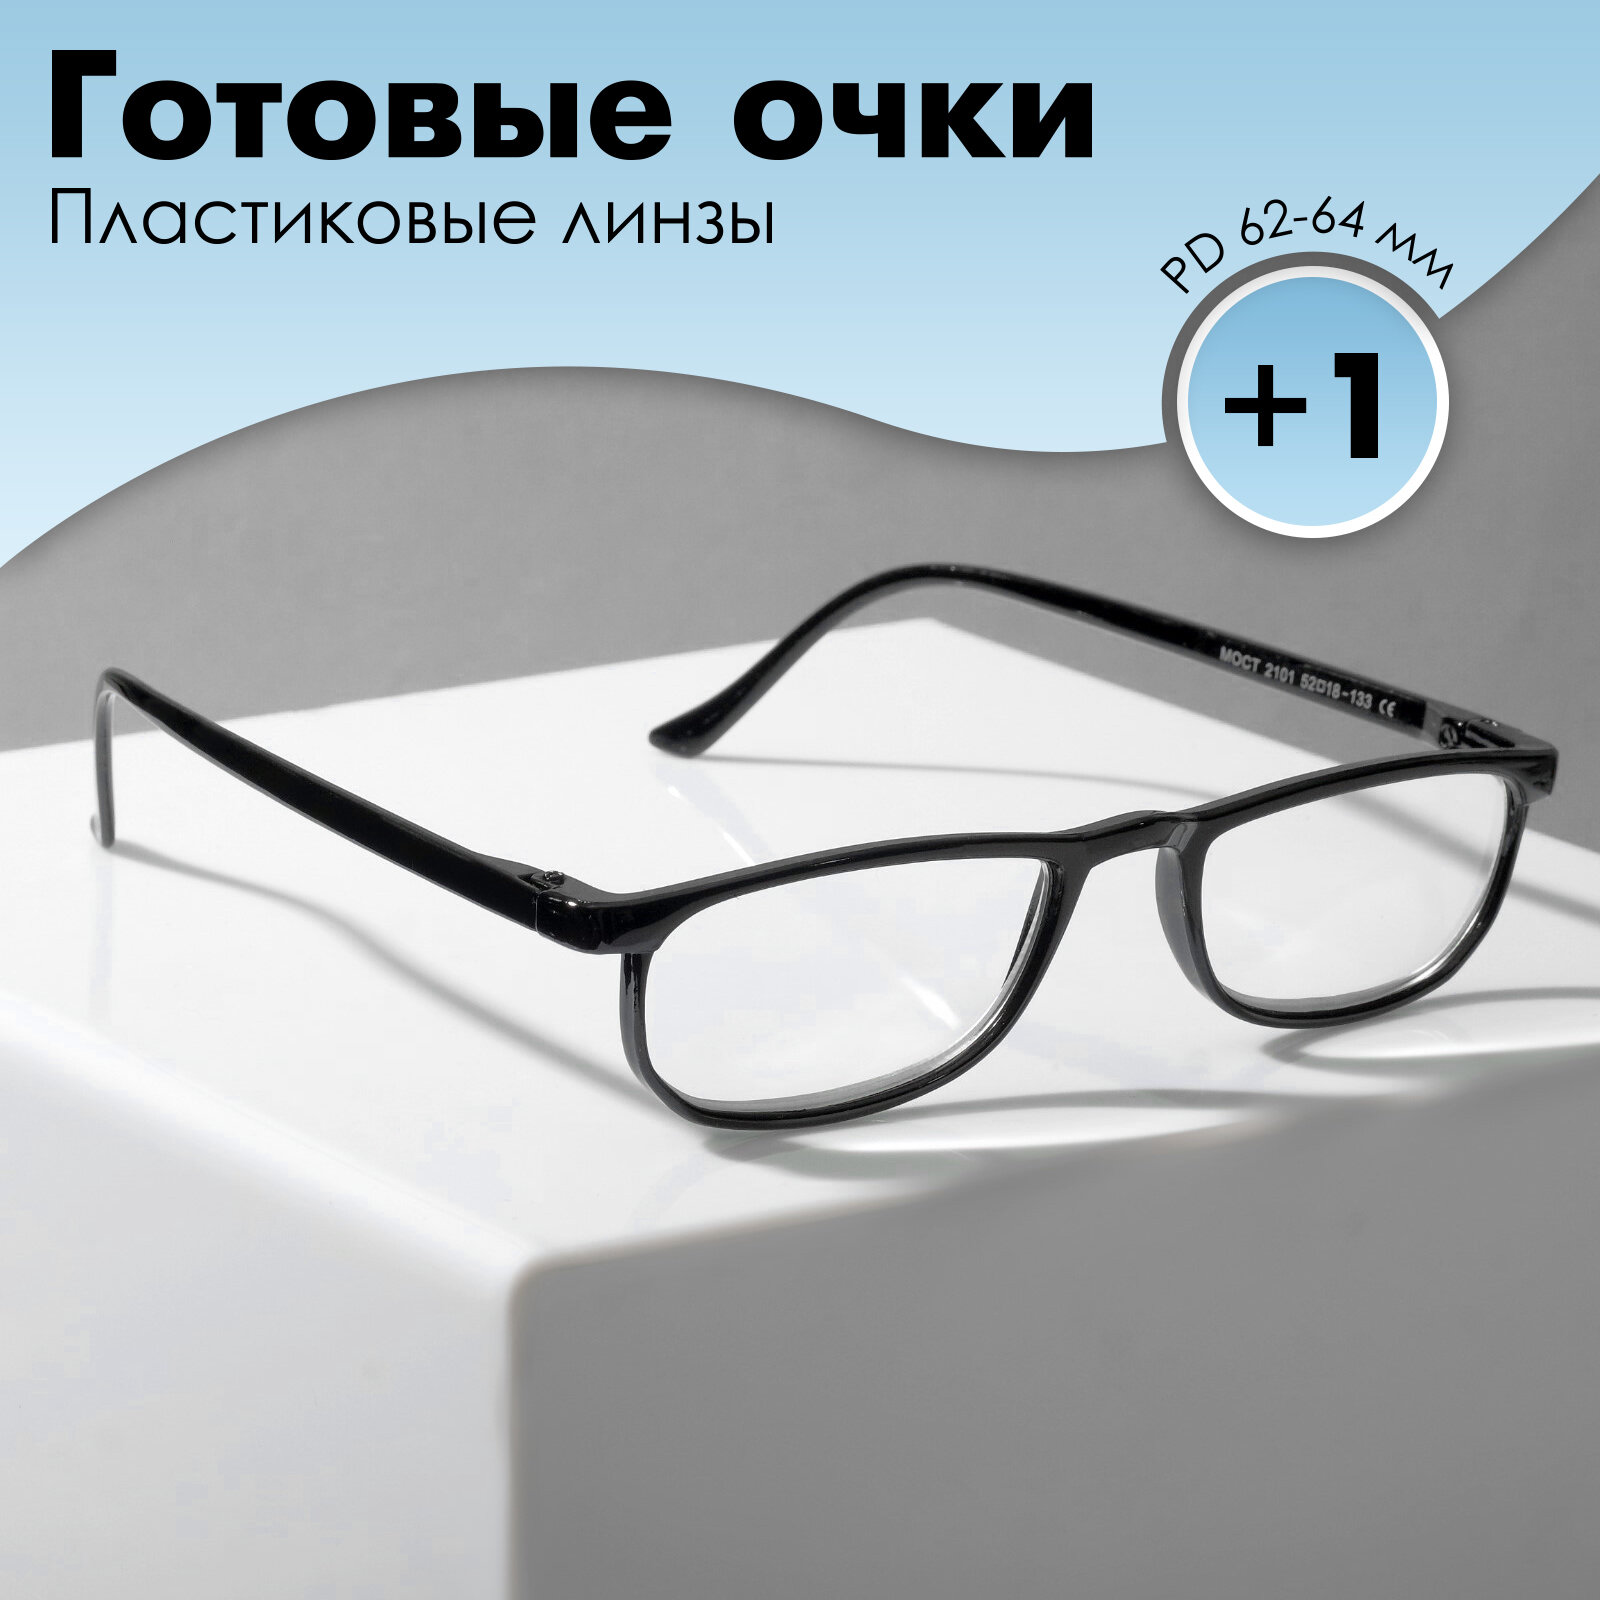 Готовые очки Most 2101 цвет чёрный (+1.00)